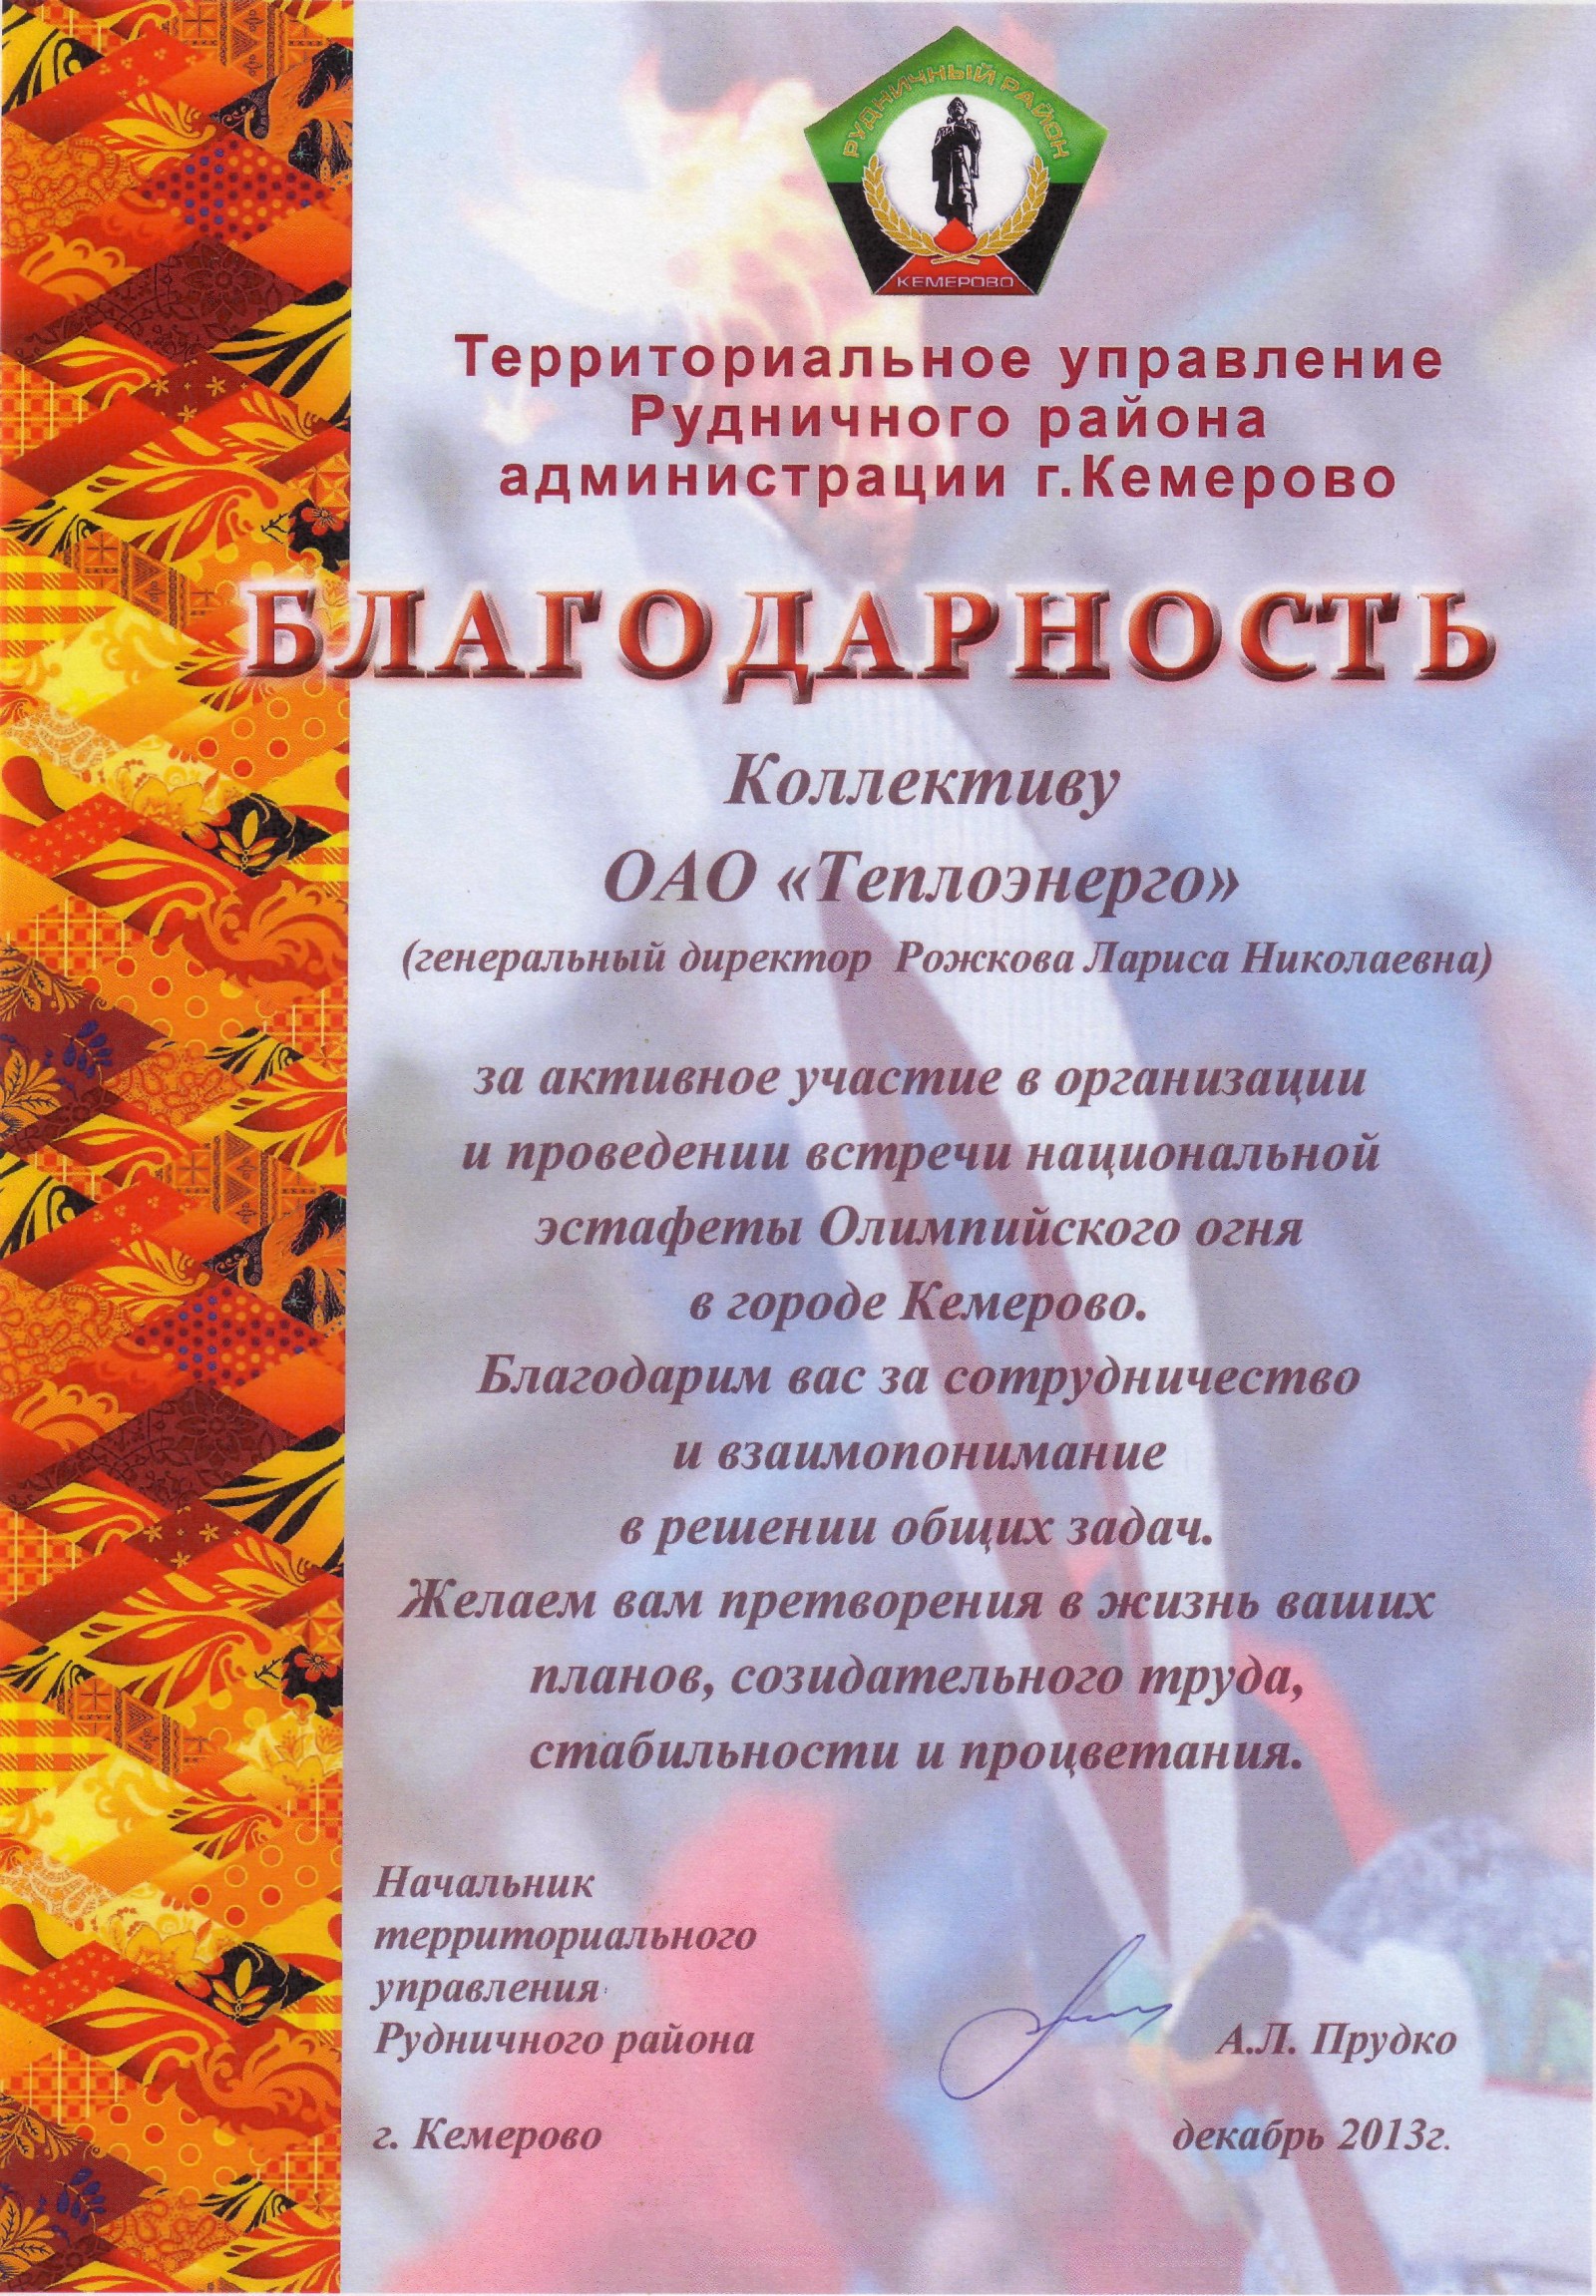 Благодарность от Территориального управления Рудничного района, г. Кемерово, 2013 г.